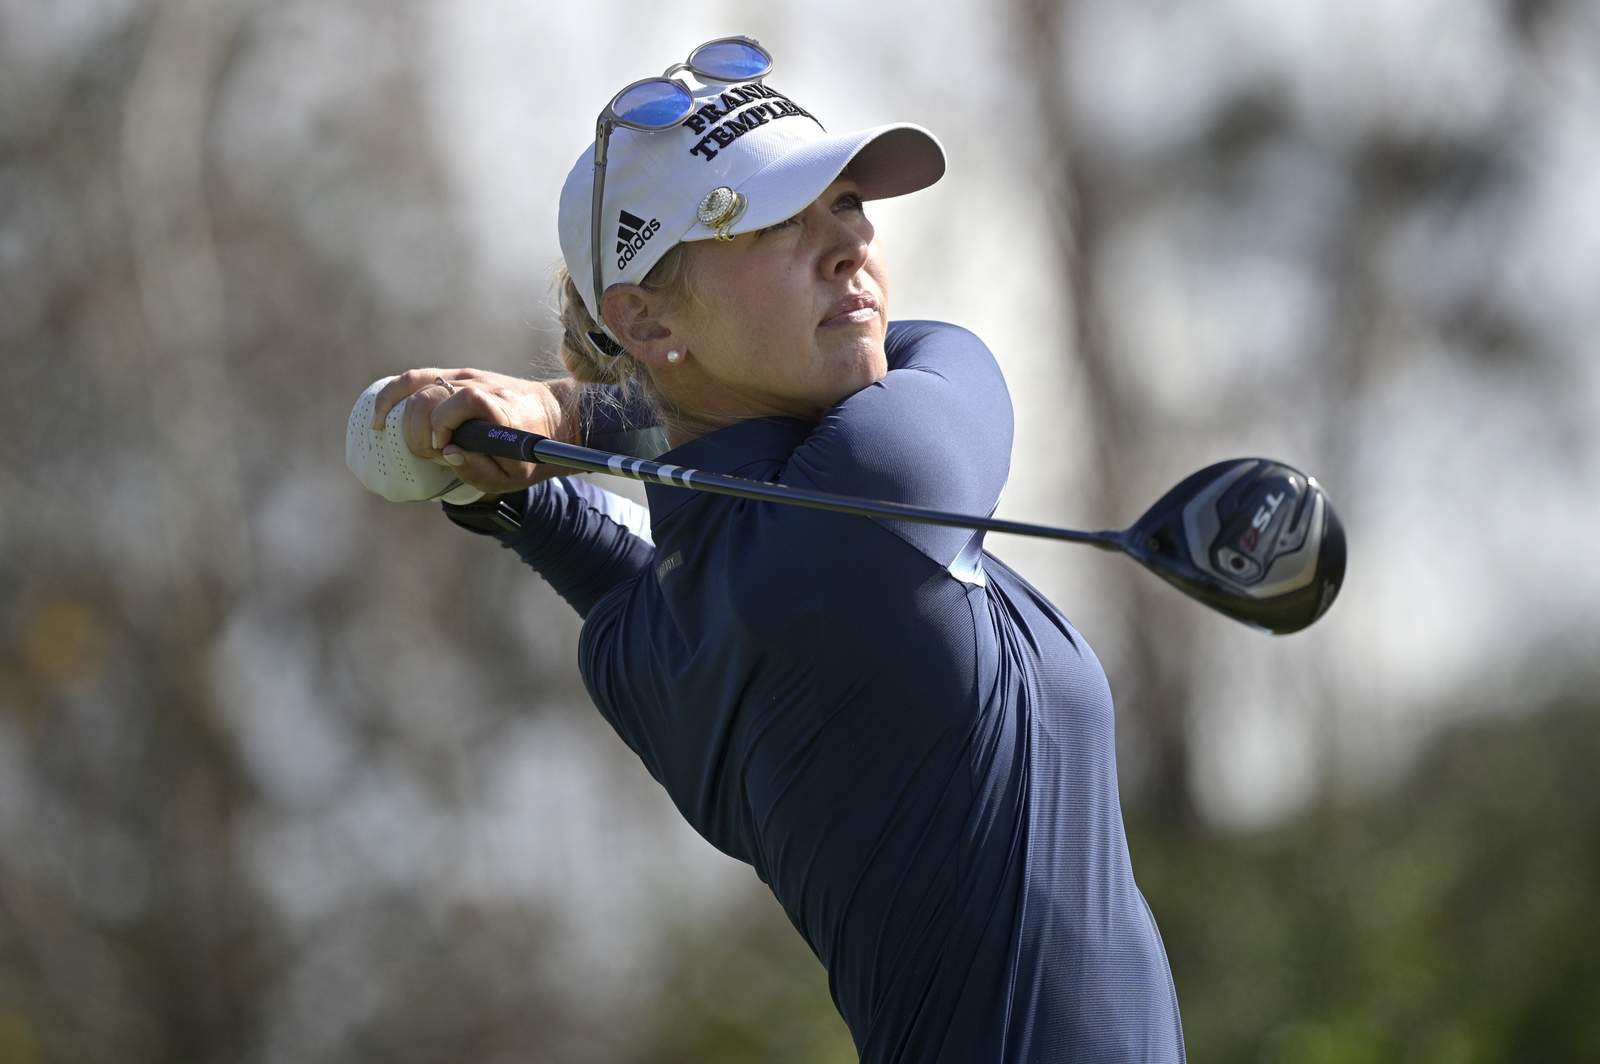 Jessica Korda rallies to beat Kang in playoff at LPGA opener